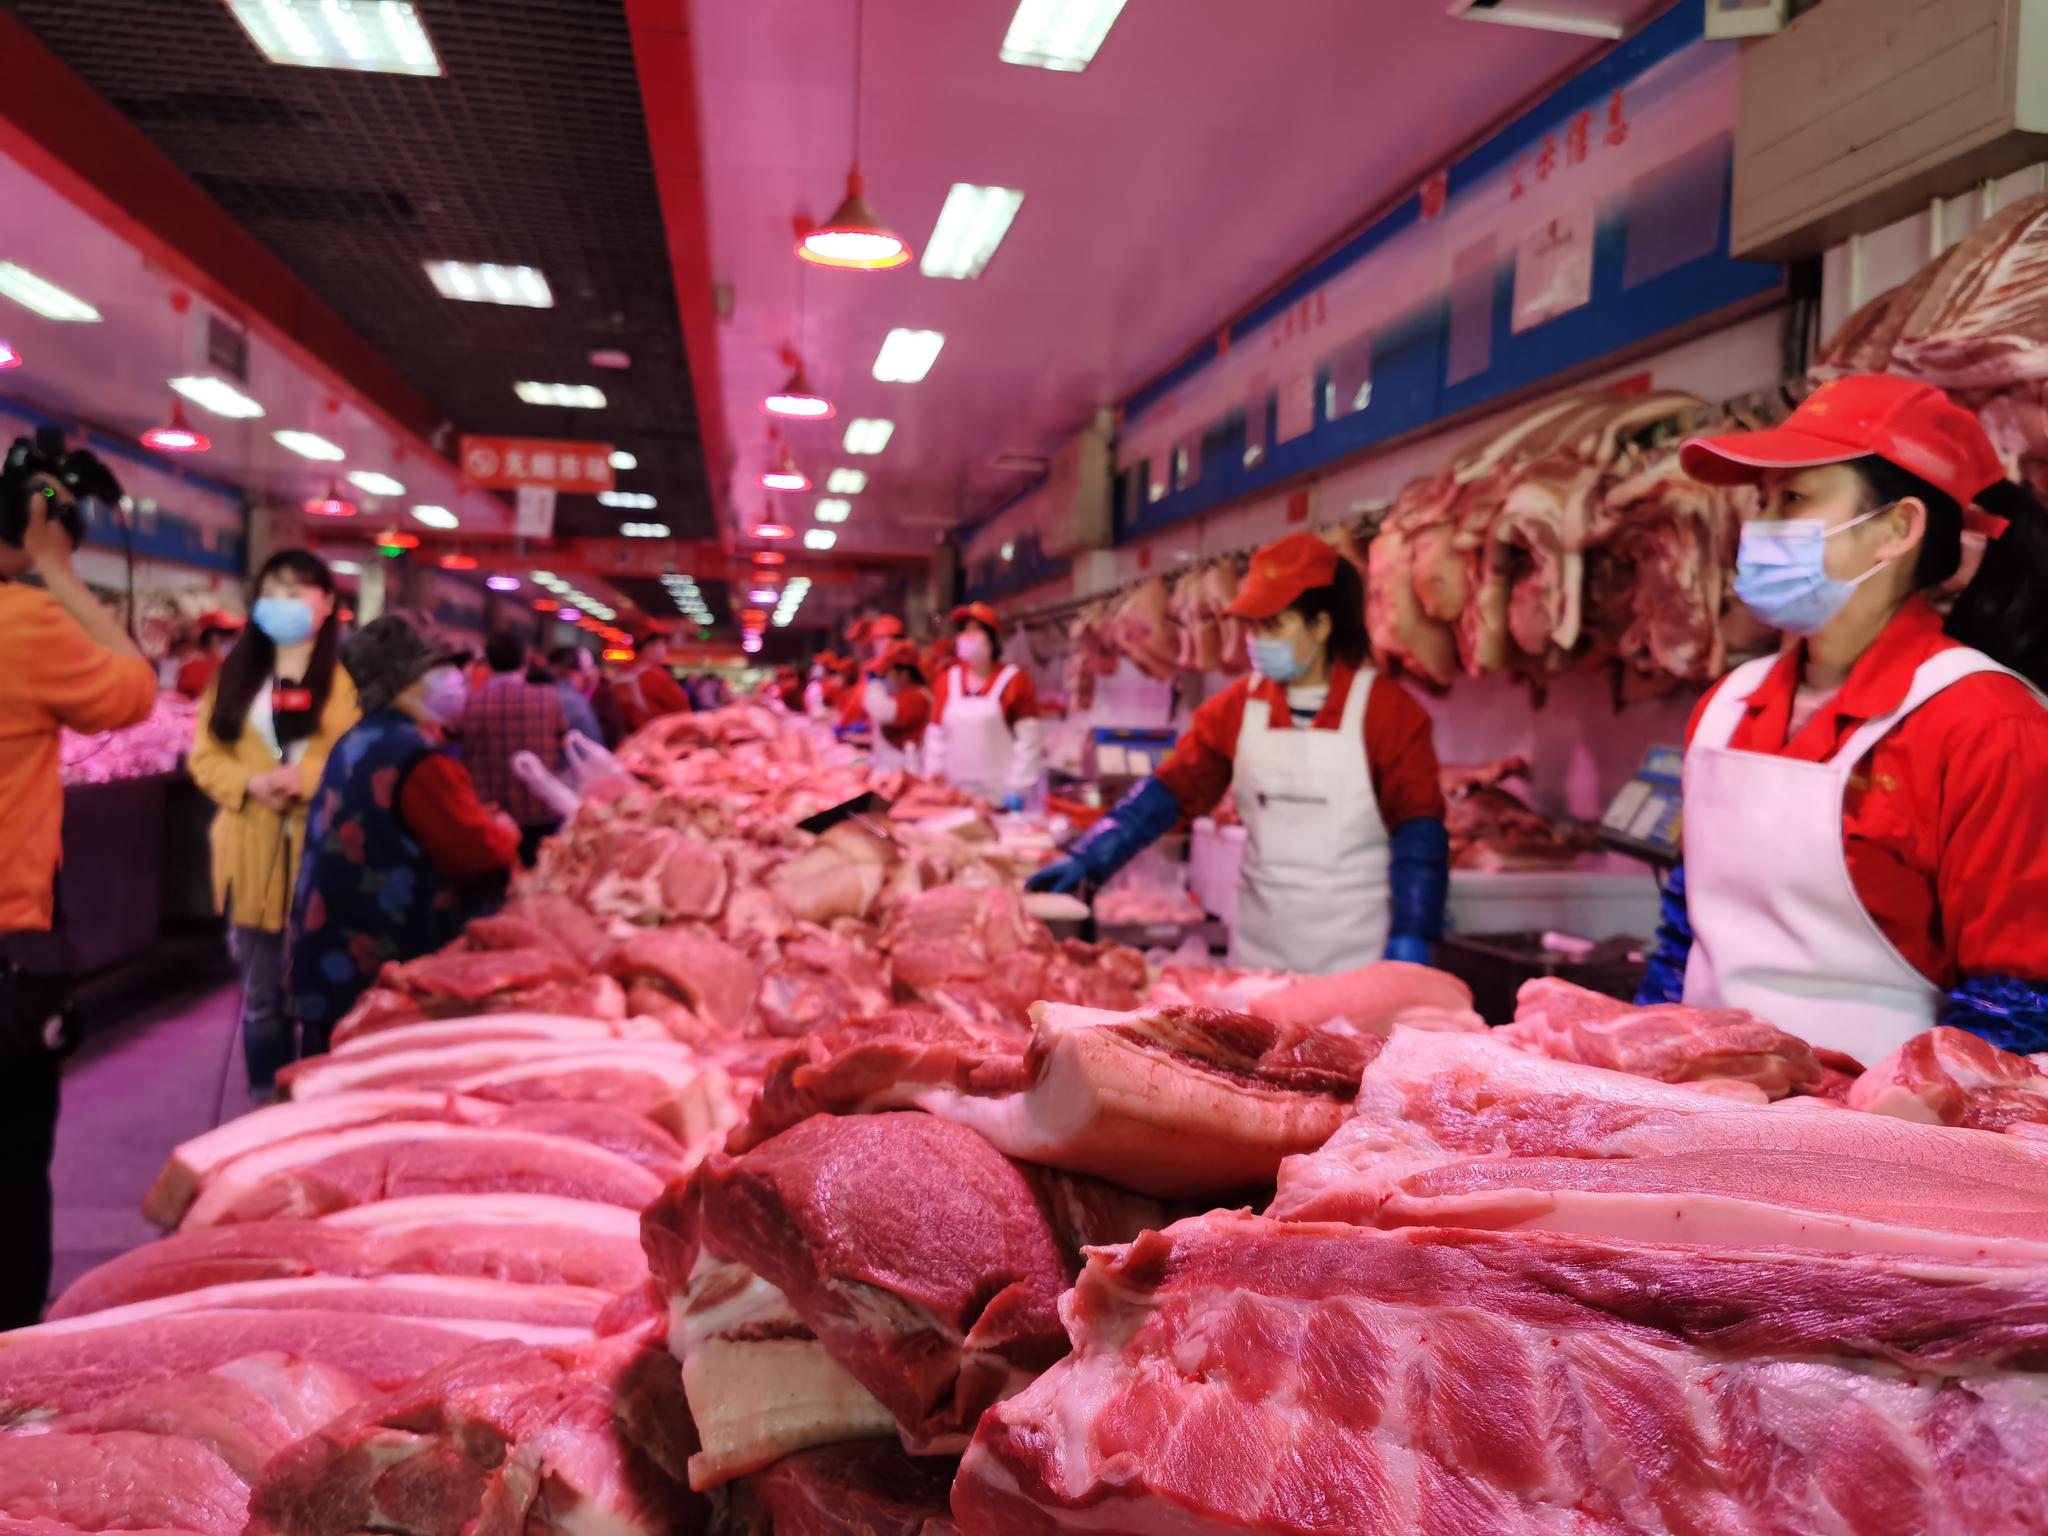 鲜猪肉图片大全-鲜猪肉高清图片下载-觅知网